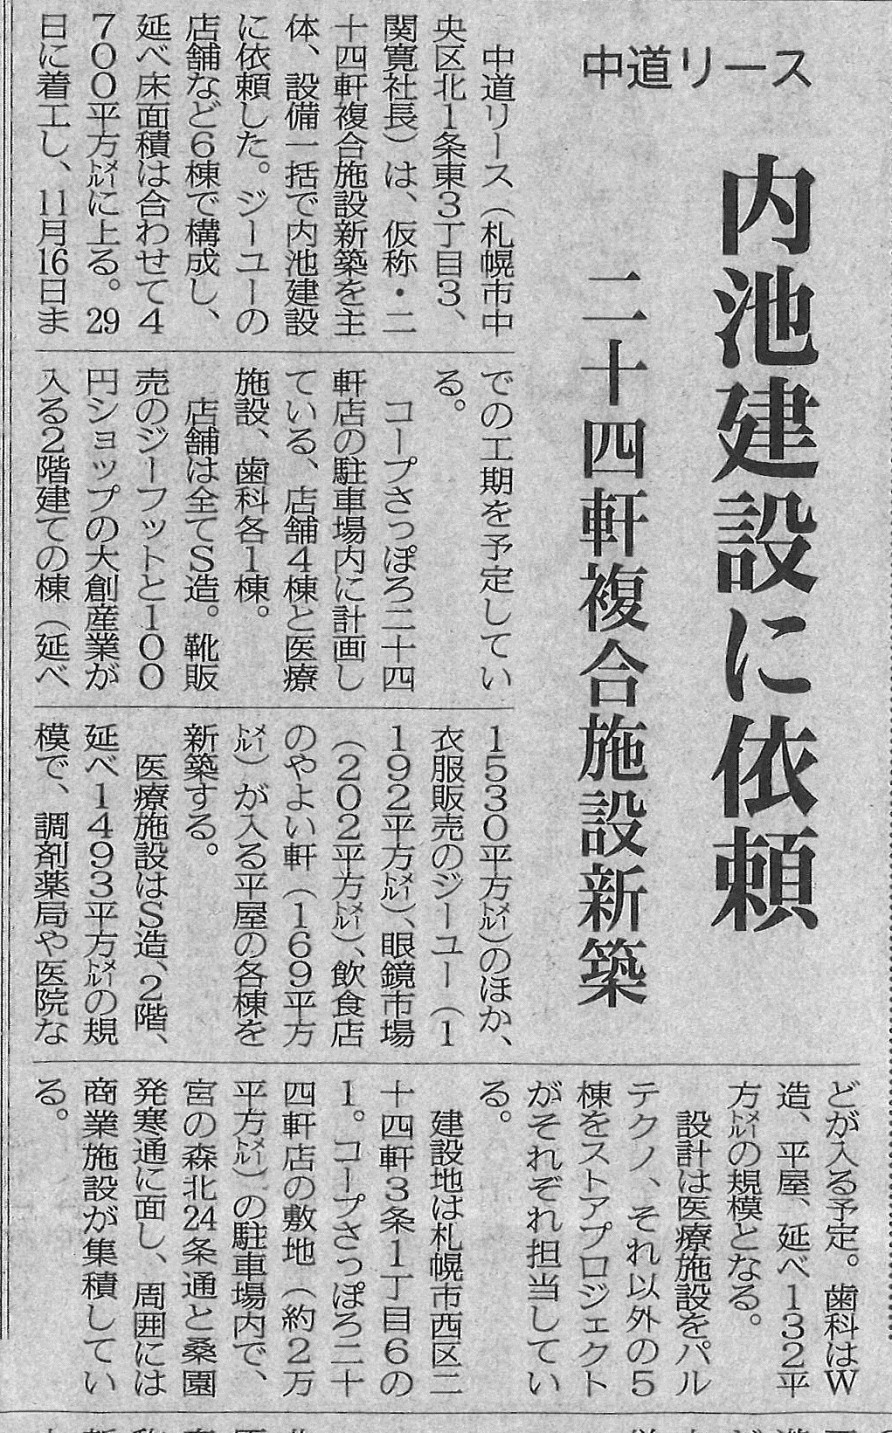 北海道建設新聞の5月25日（金）刊の記事に二十四軒複合施設（弊社施工管理予定）が掲載されています